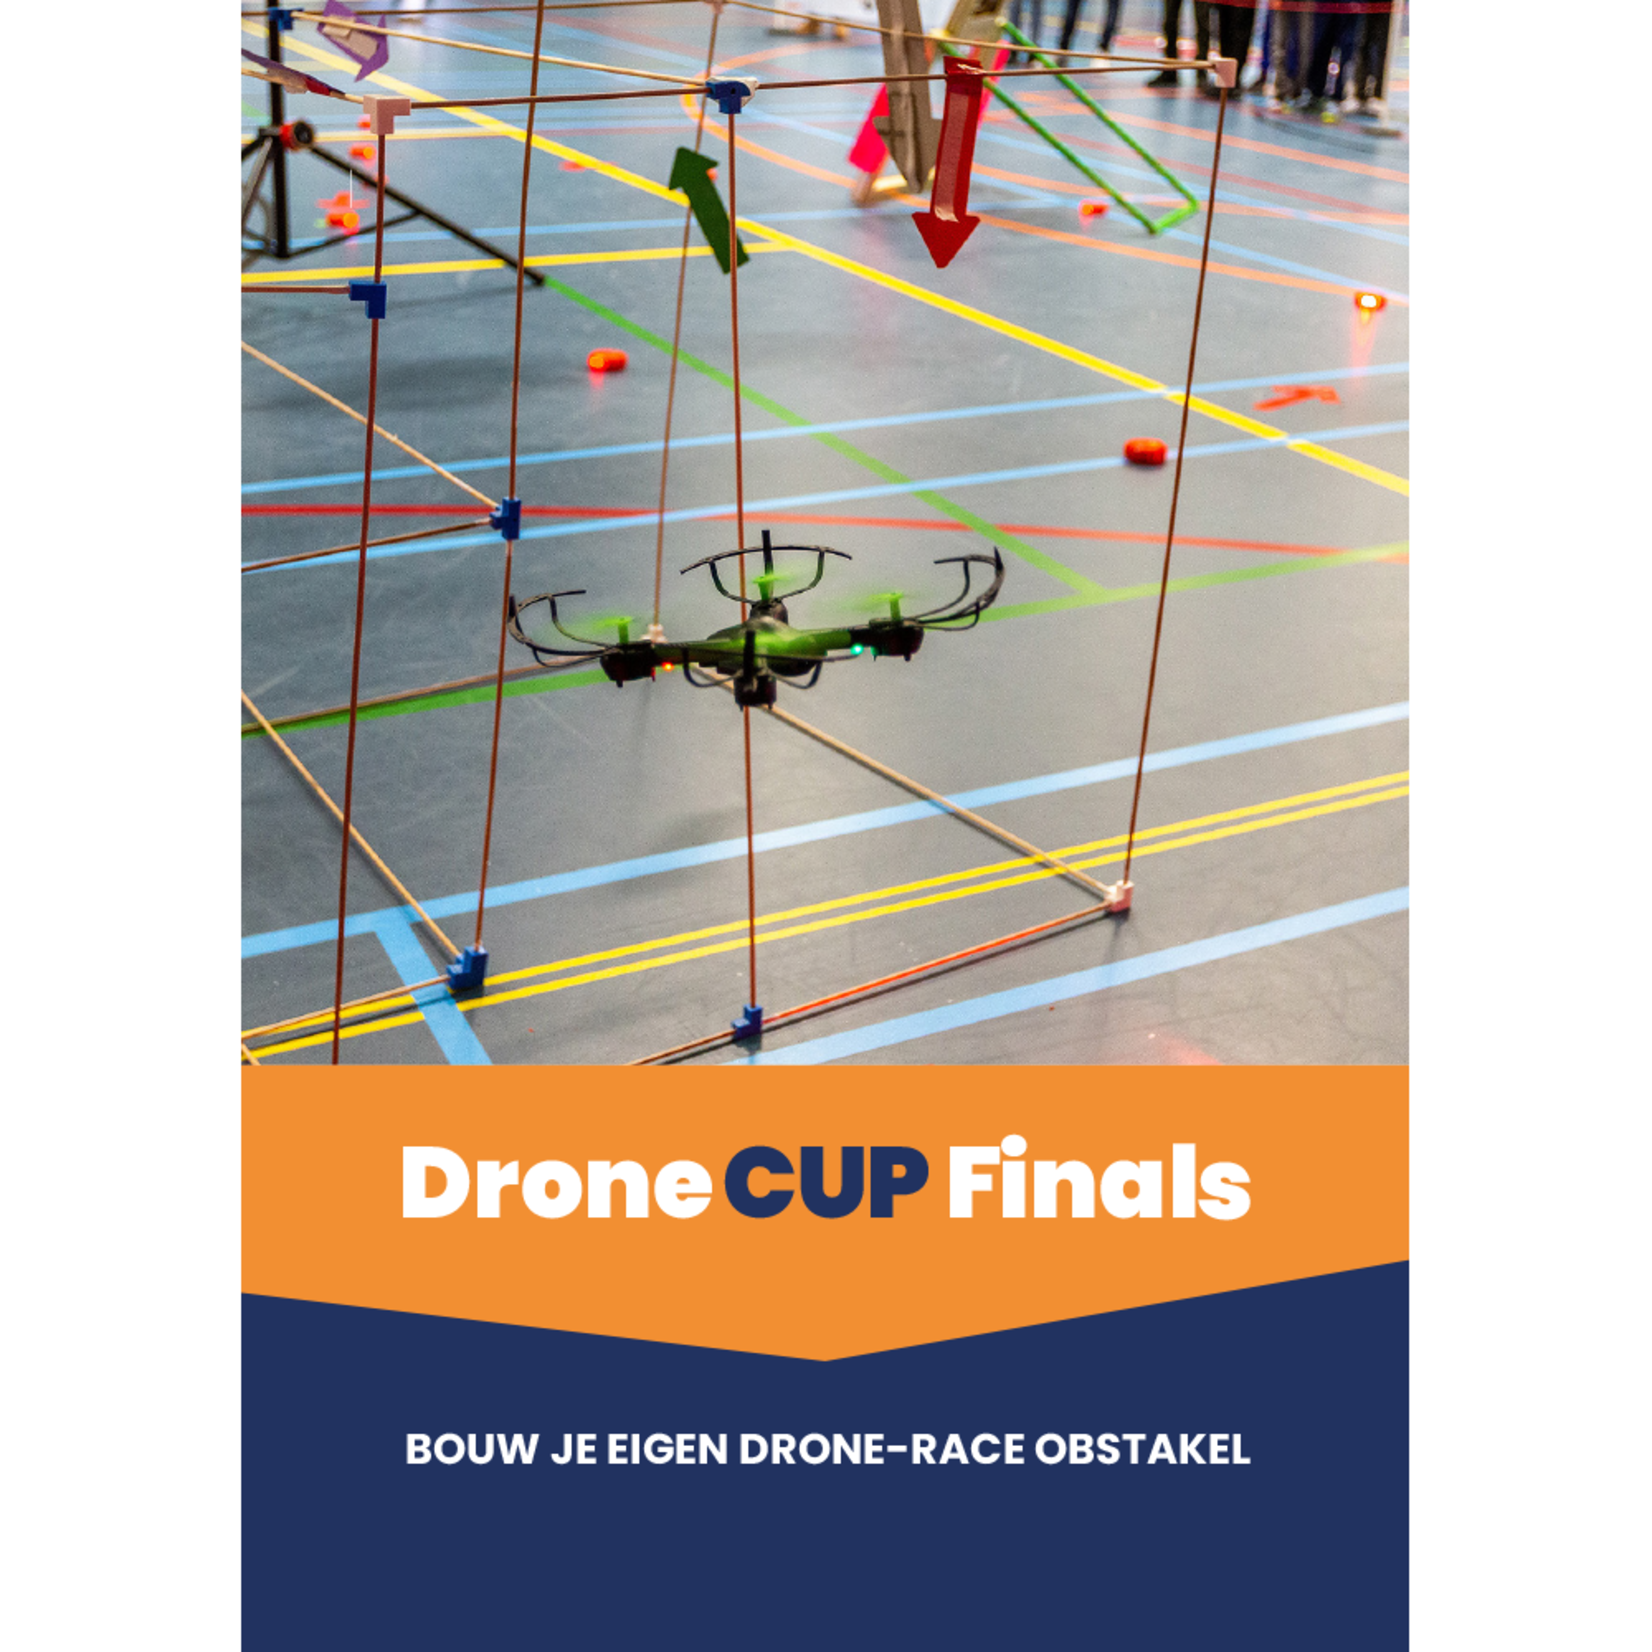 Drone Cup Finals Leerlingwerkboek Bouw je eigen drone-race obstakel